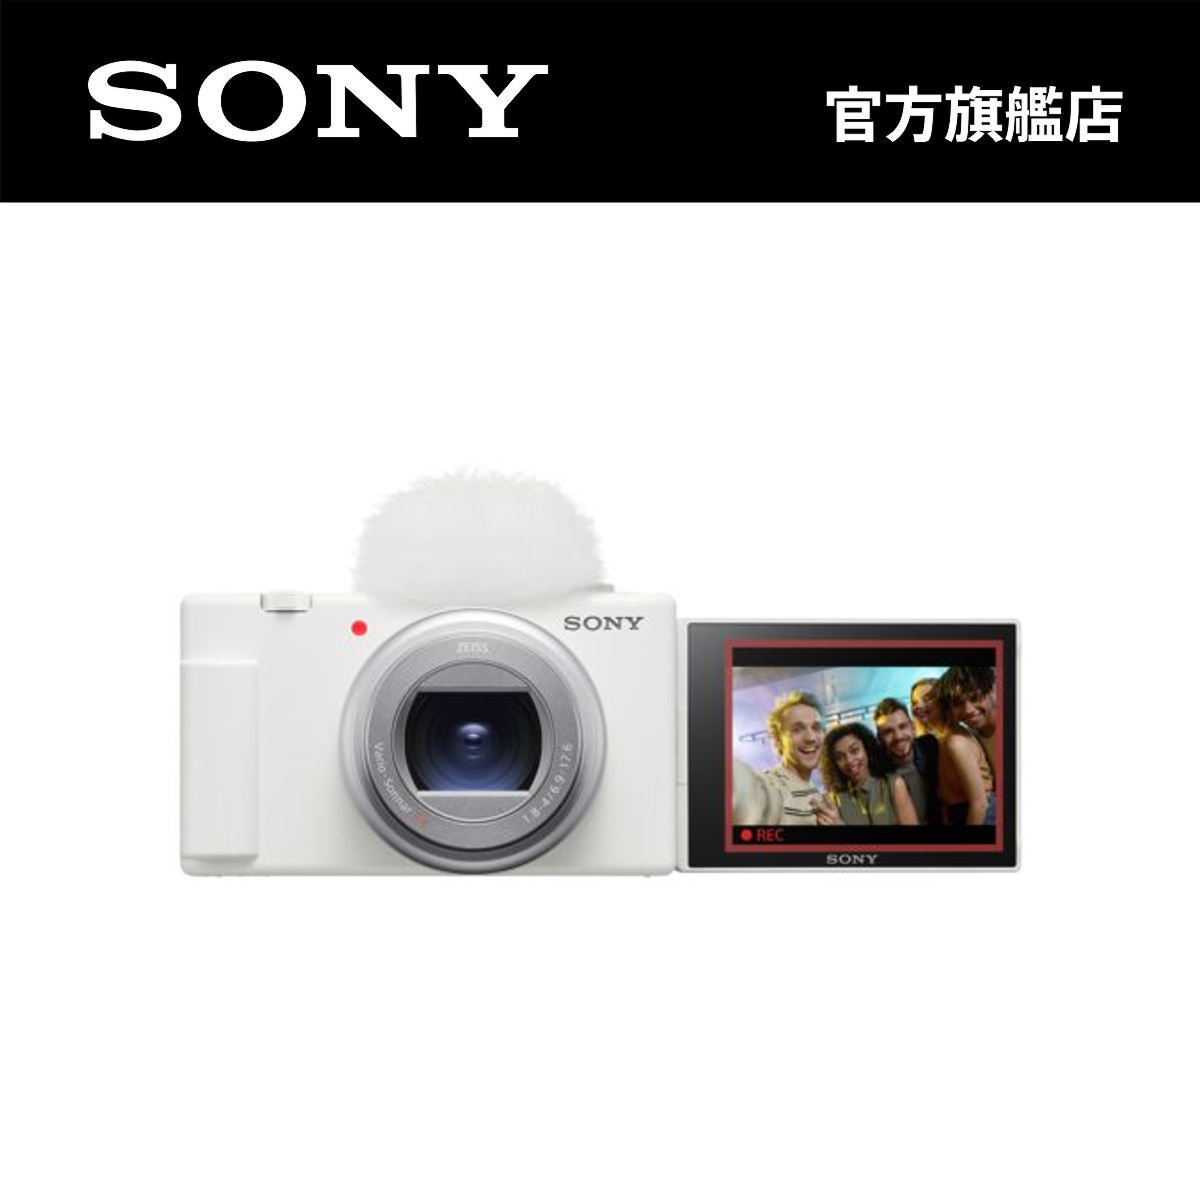 SONY | 影像網誌相機| ZV-1 II | 顏色: 白色| HKTVmall 香港最大